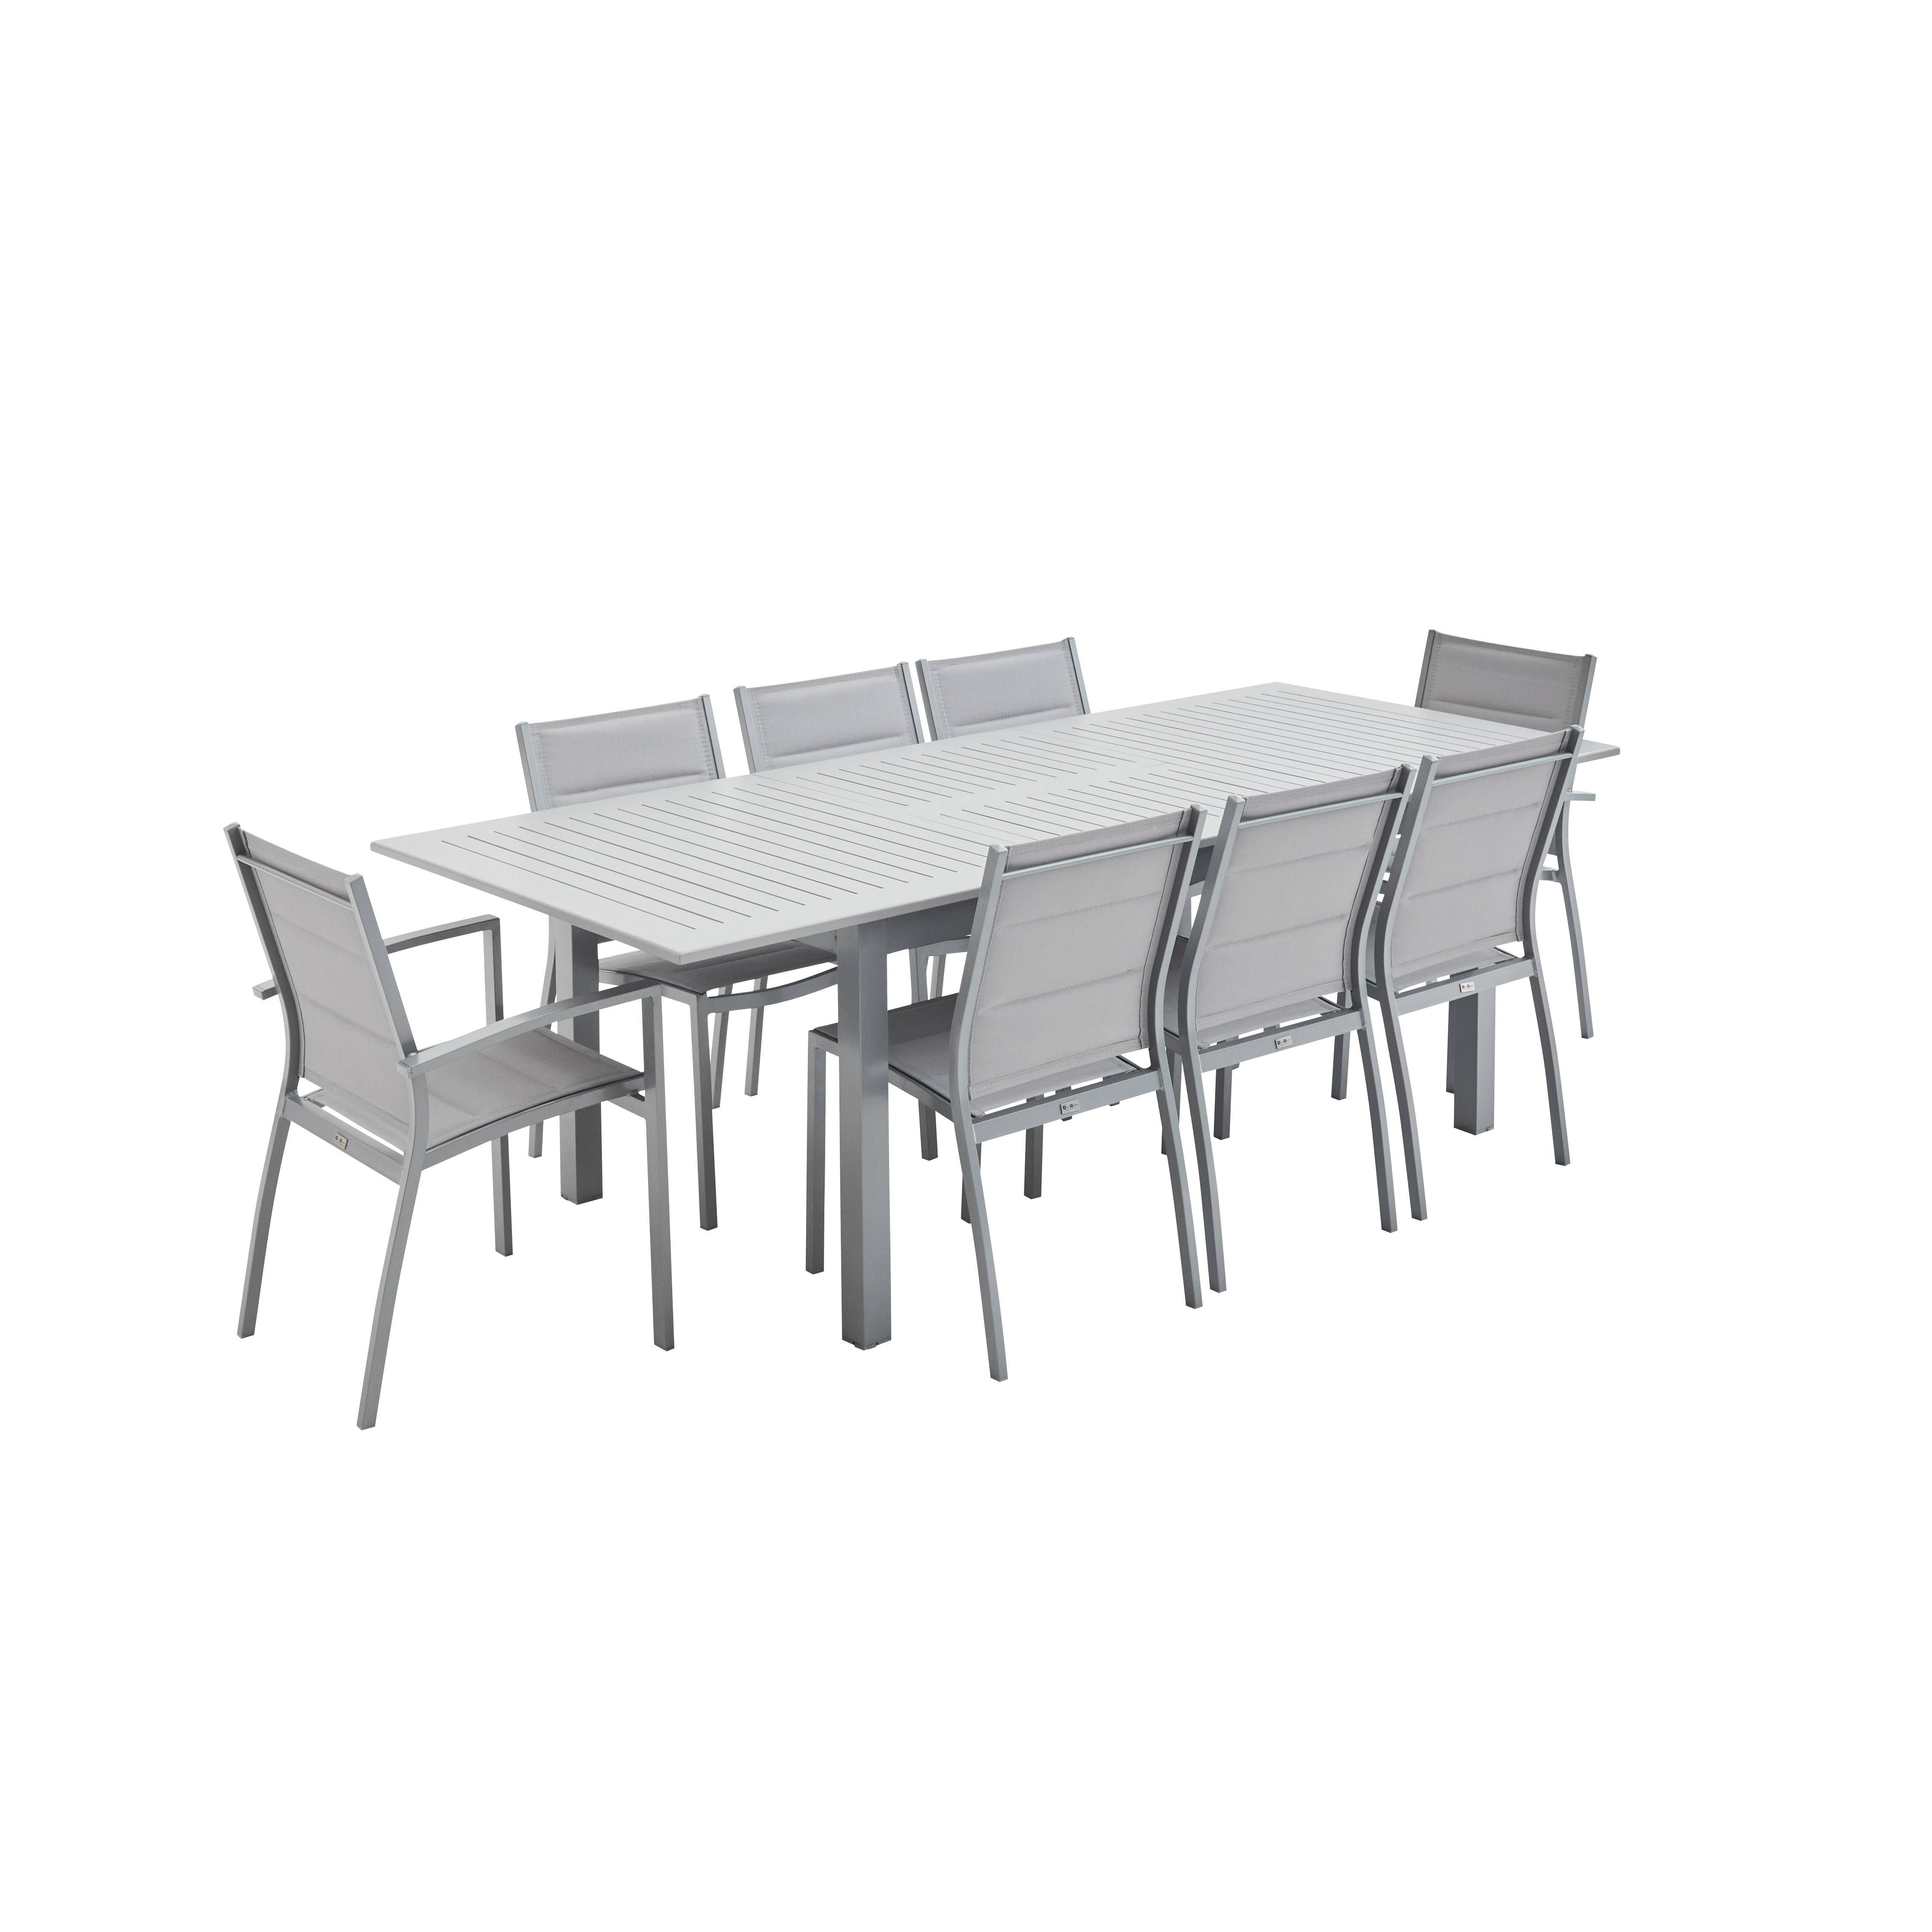 Set da giardino con tavolo allungabile - modello: Chicago, colore: Grigio - Tavolo in alluminio, dimensioni: 175/245cm con prolunga e 8 sedute in textilene Photo2